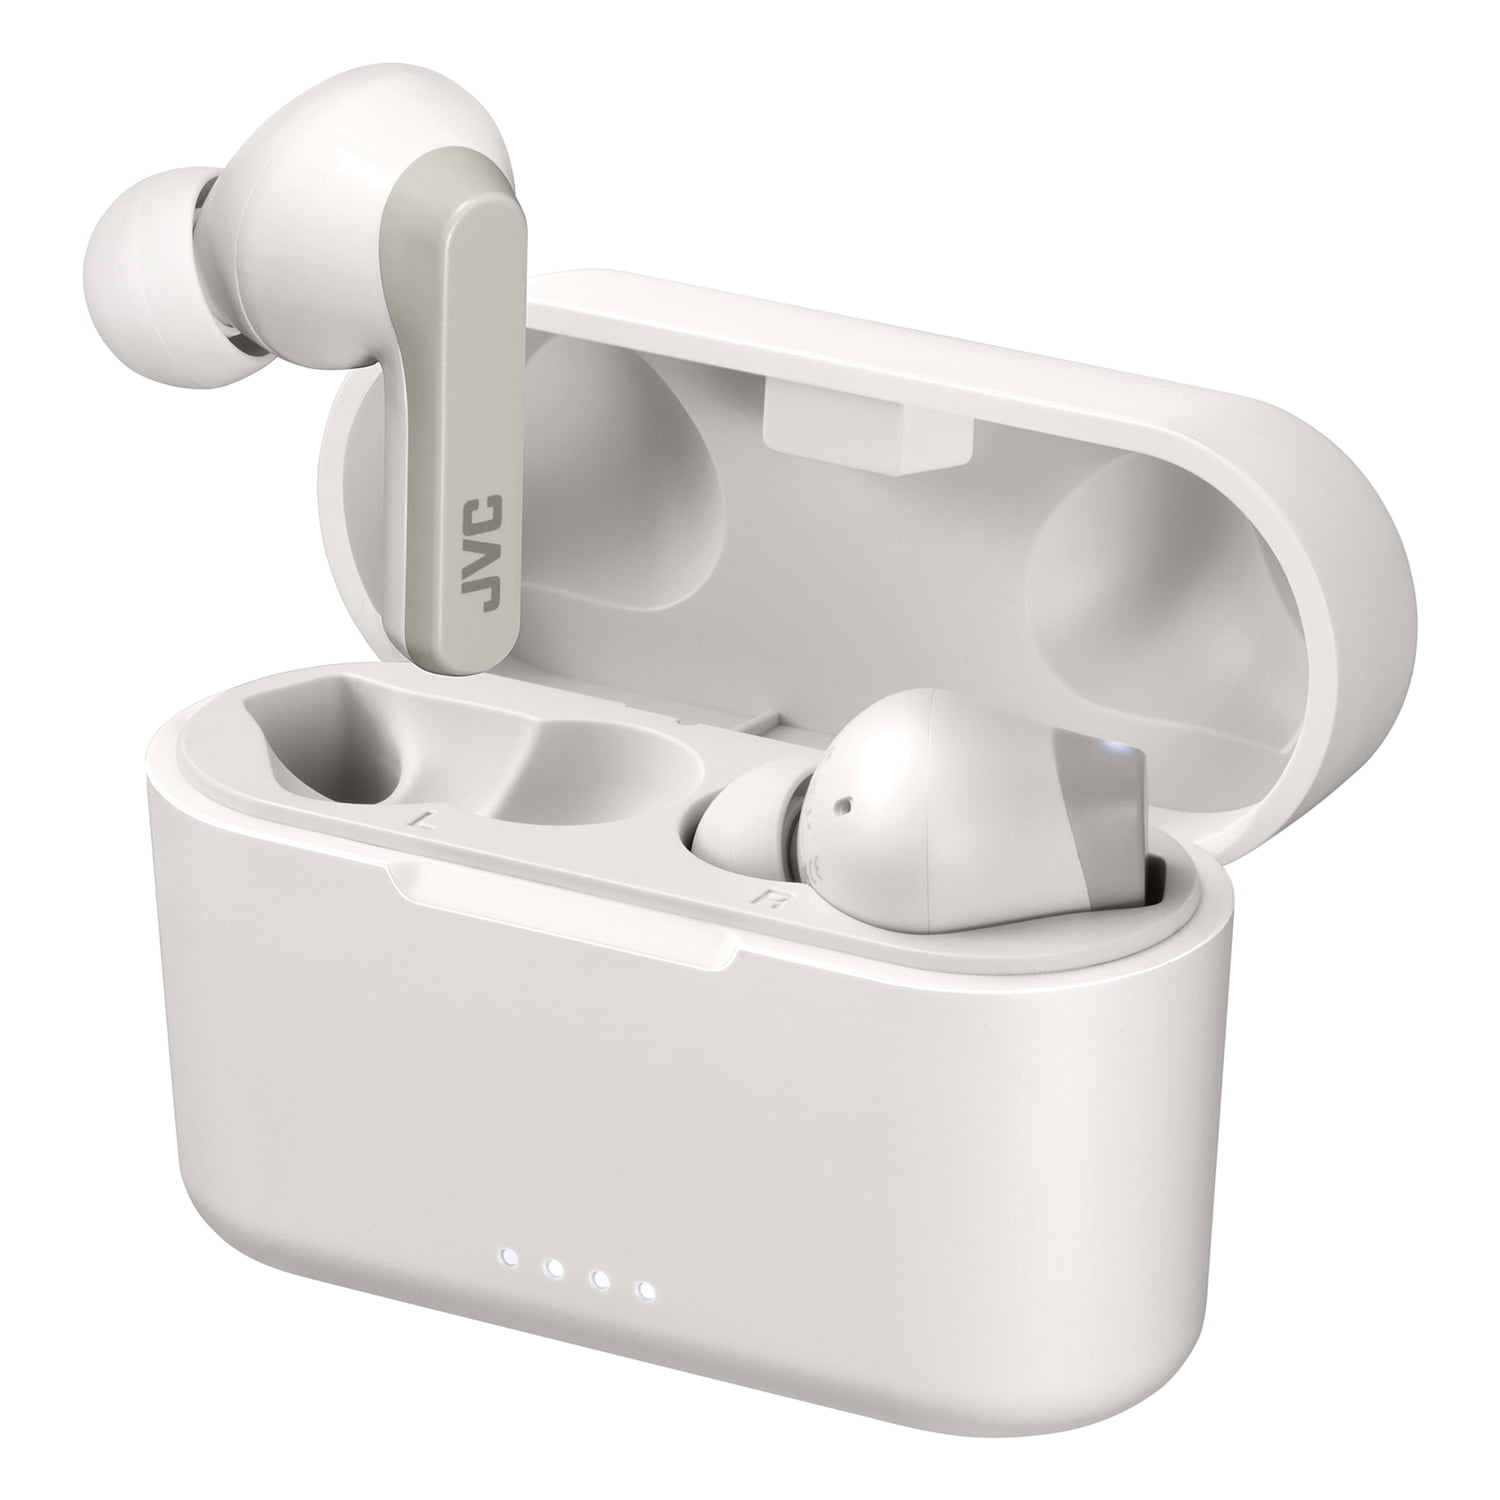 JVC - True Wireless Headphones Earbud Style - White